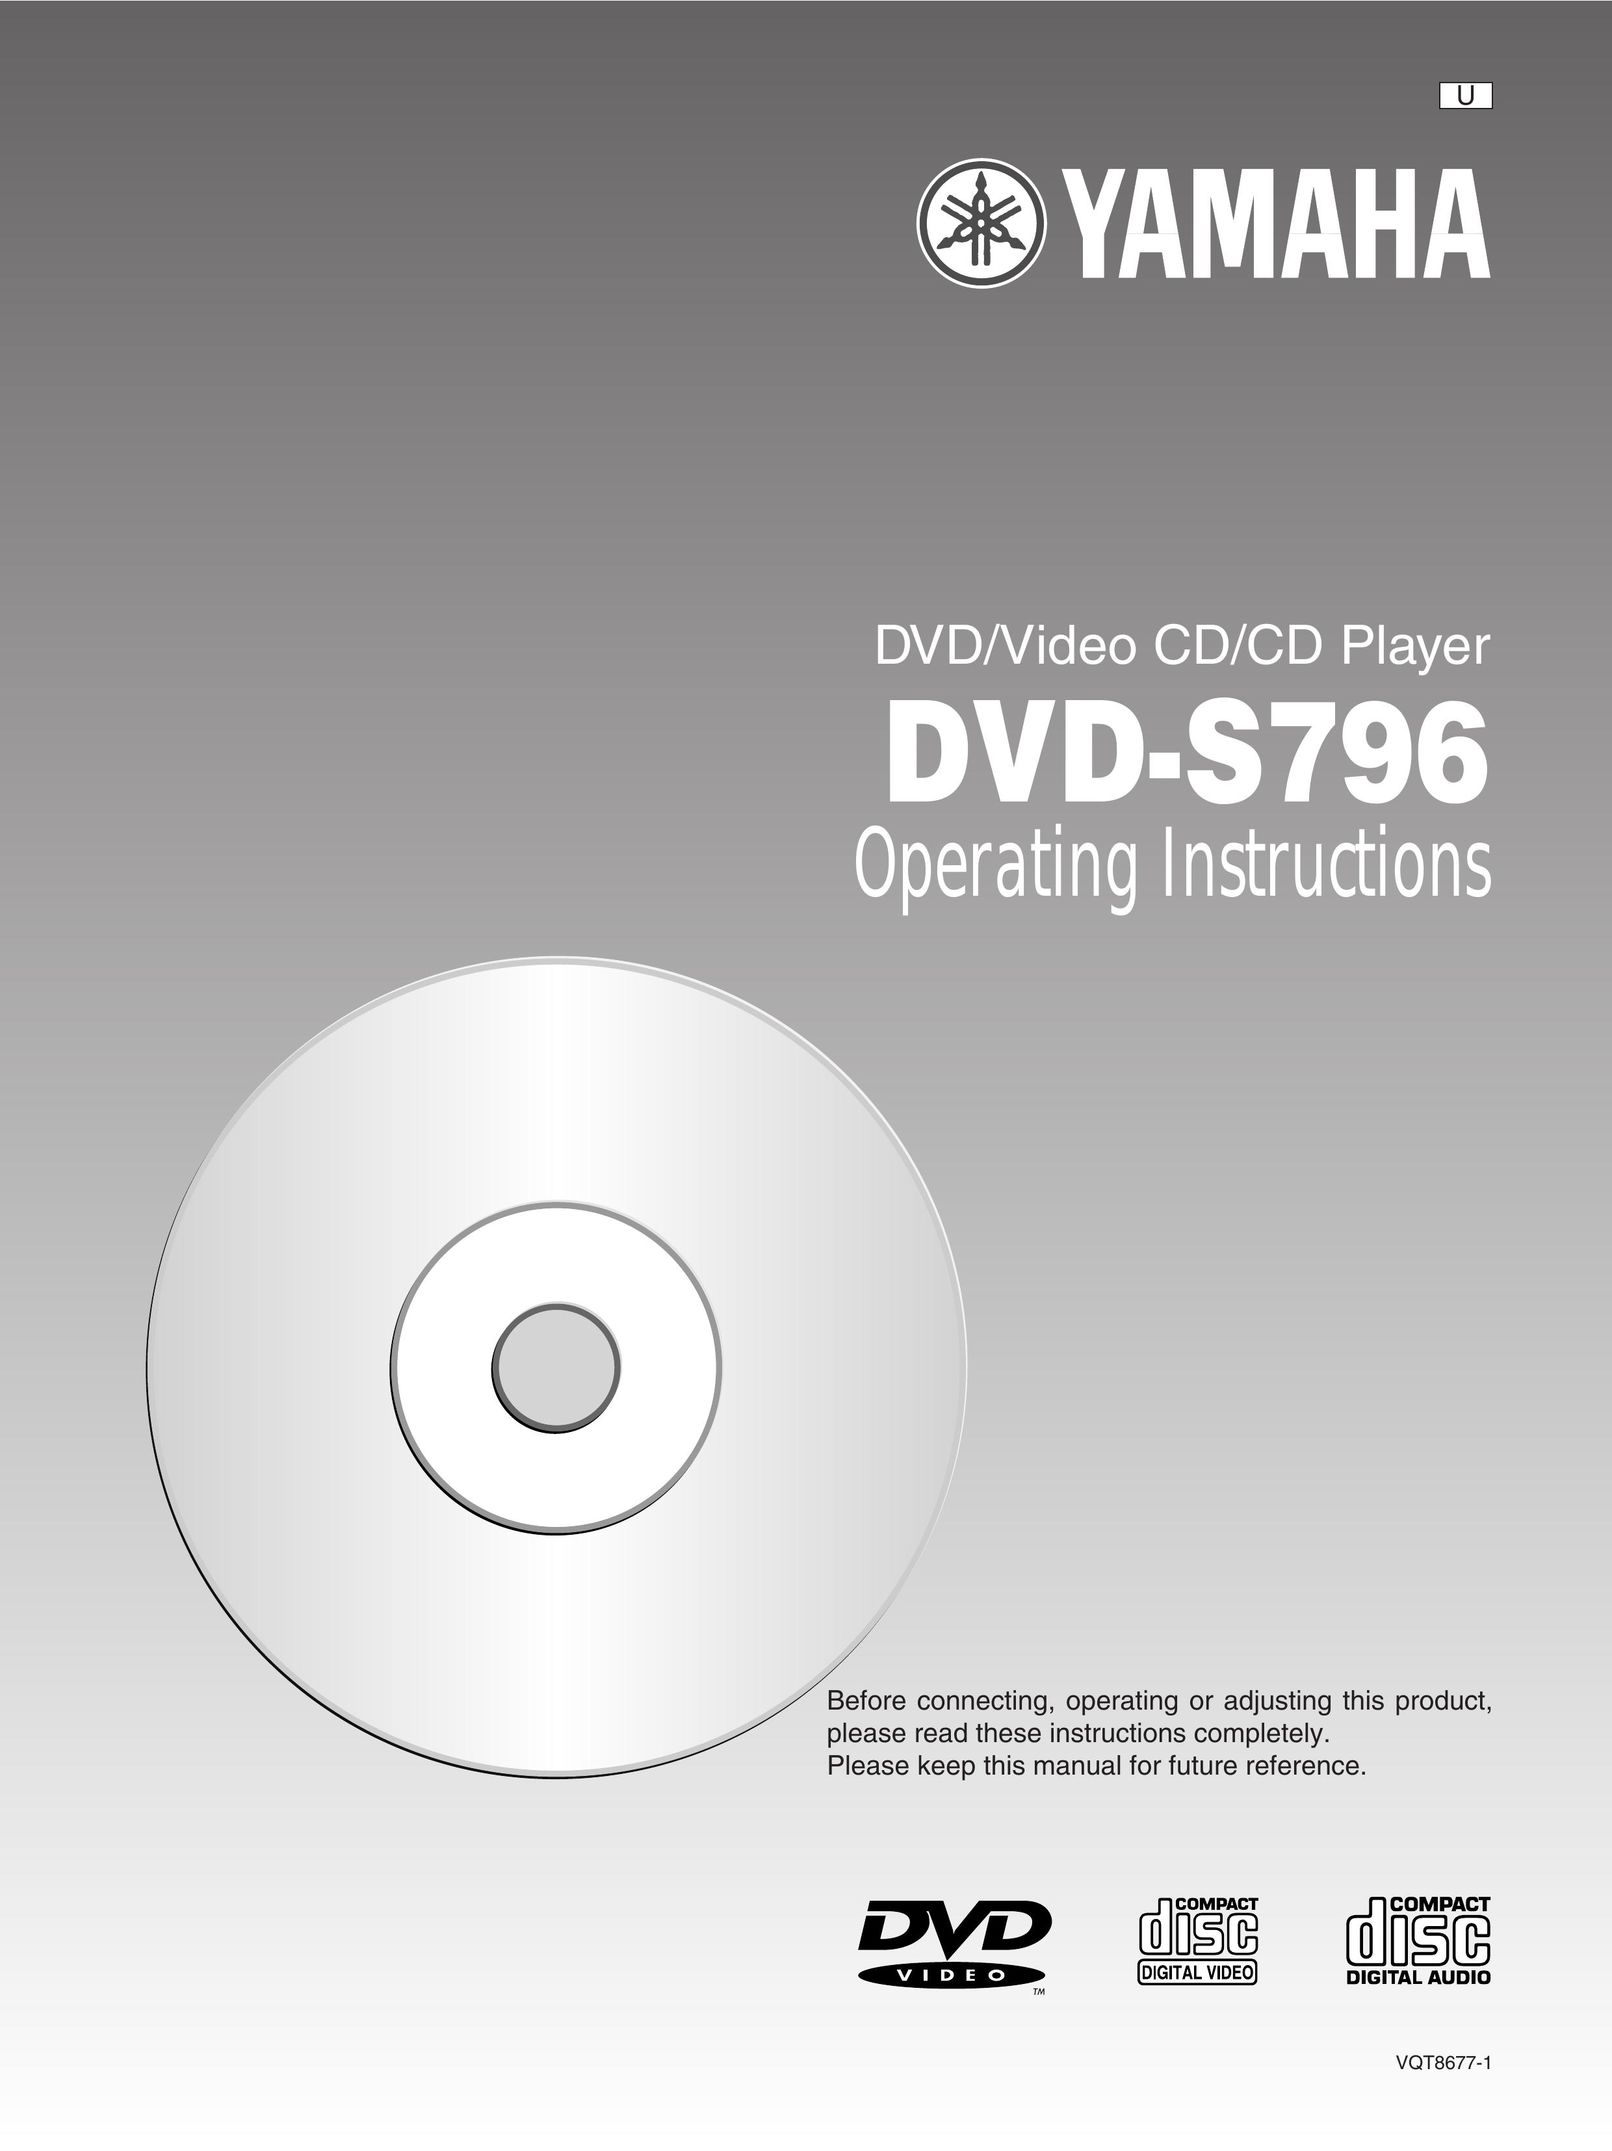 Yamaha DVD-S796 DVD Player User Manual